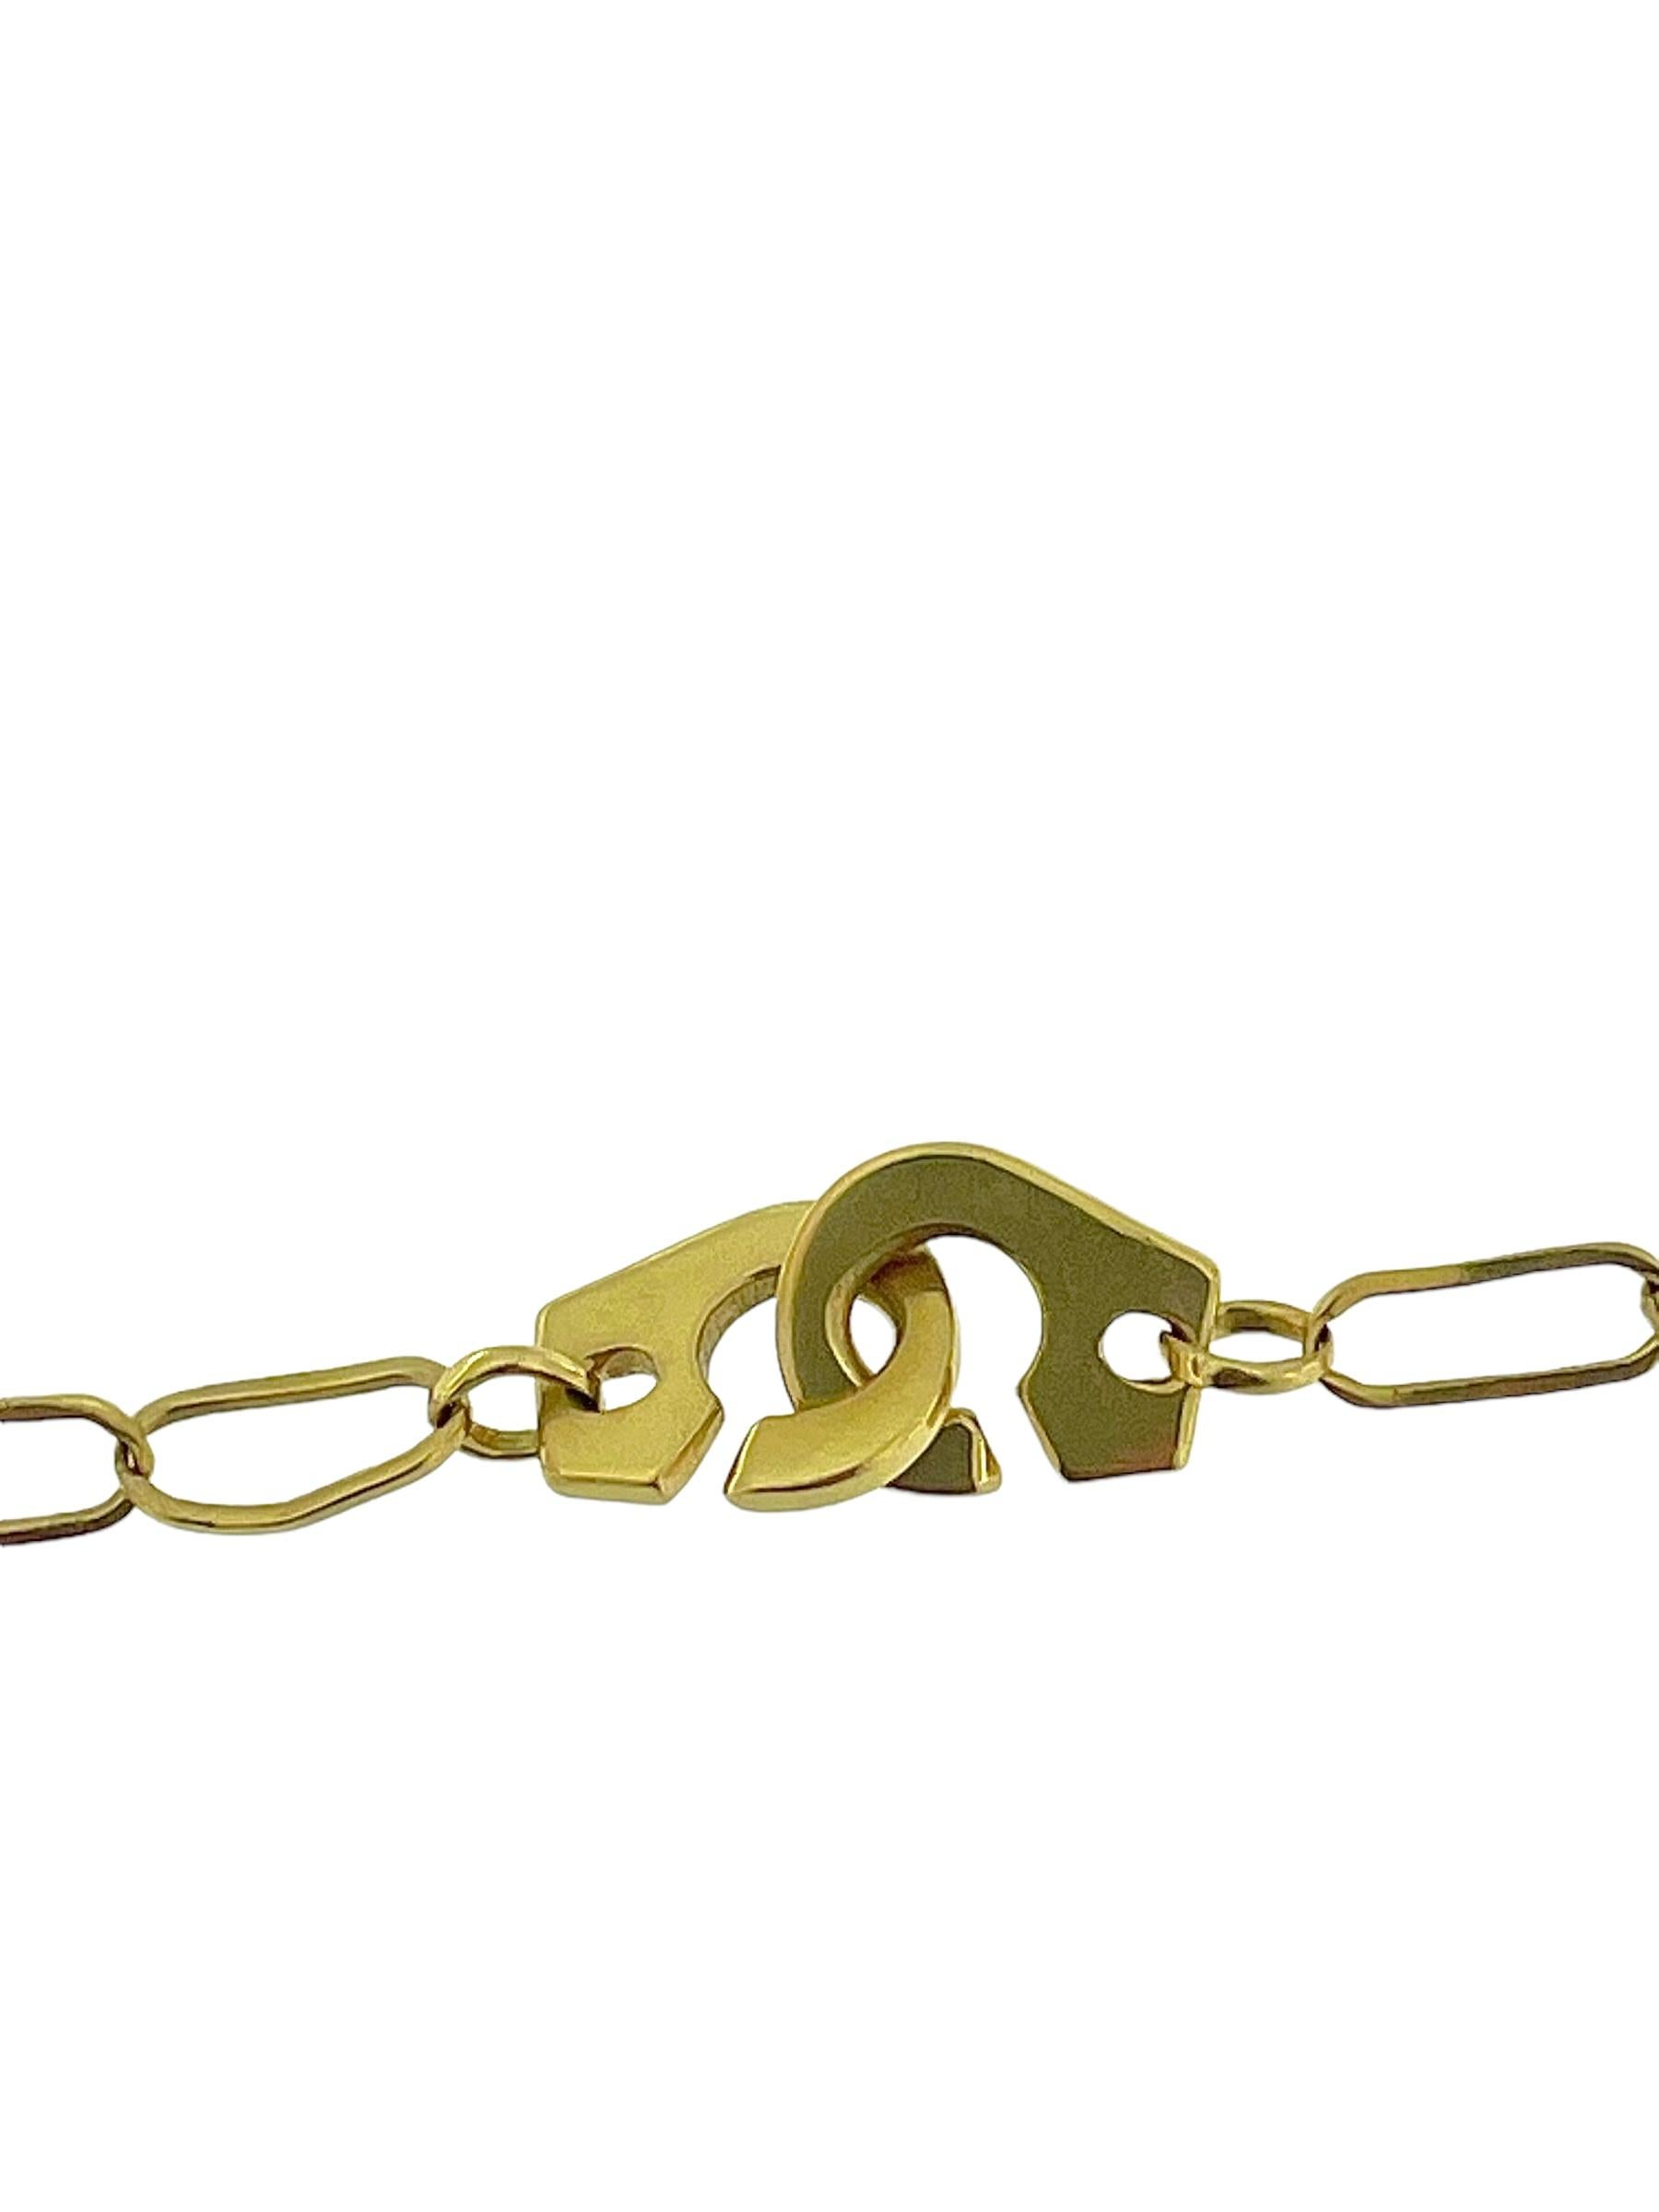 Le collier à maillons en or jaune italien de Chimento est un bijou audacieux et élégant qui allie l'artisanat italien au design contemporain. Réalisé en or jaune 18 carats, ce collier présente un pendentif unique inspiré des menottes, qui respire à